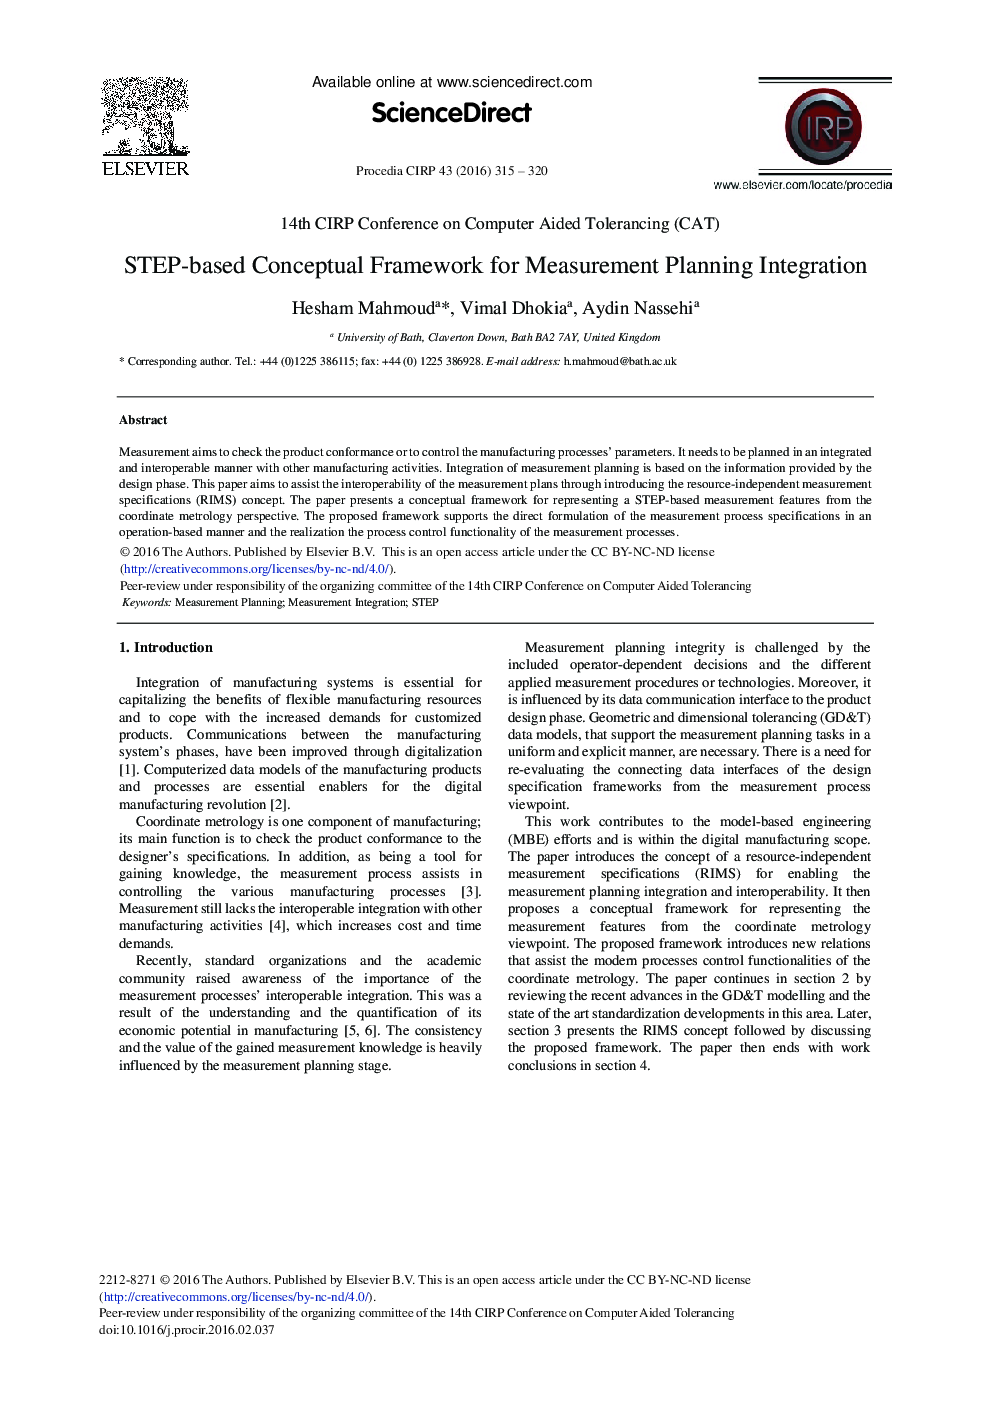 STEP-based Conceptual Framework for Measurement Planning Integration 